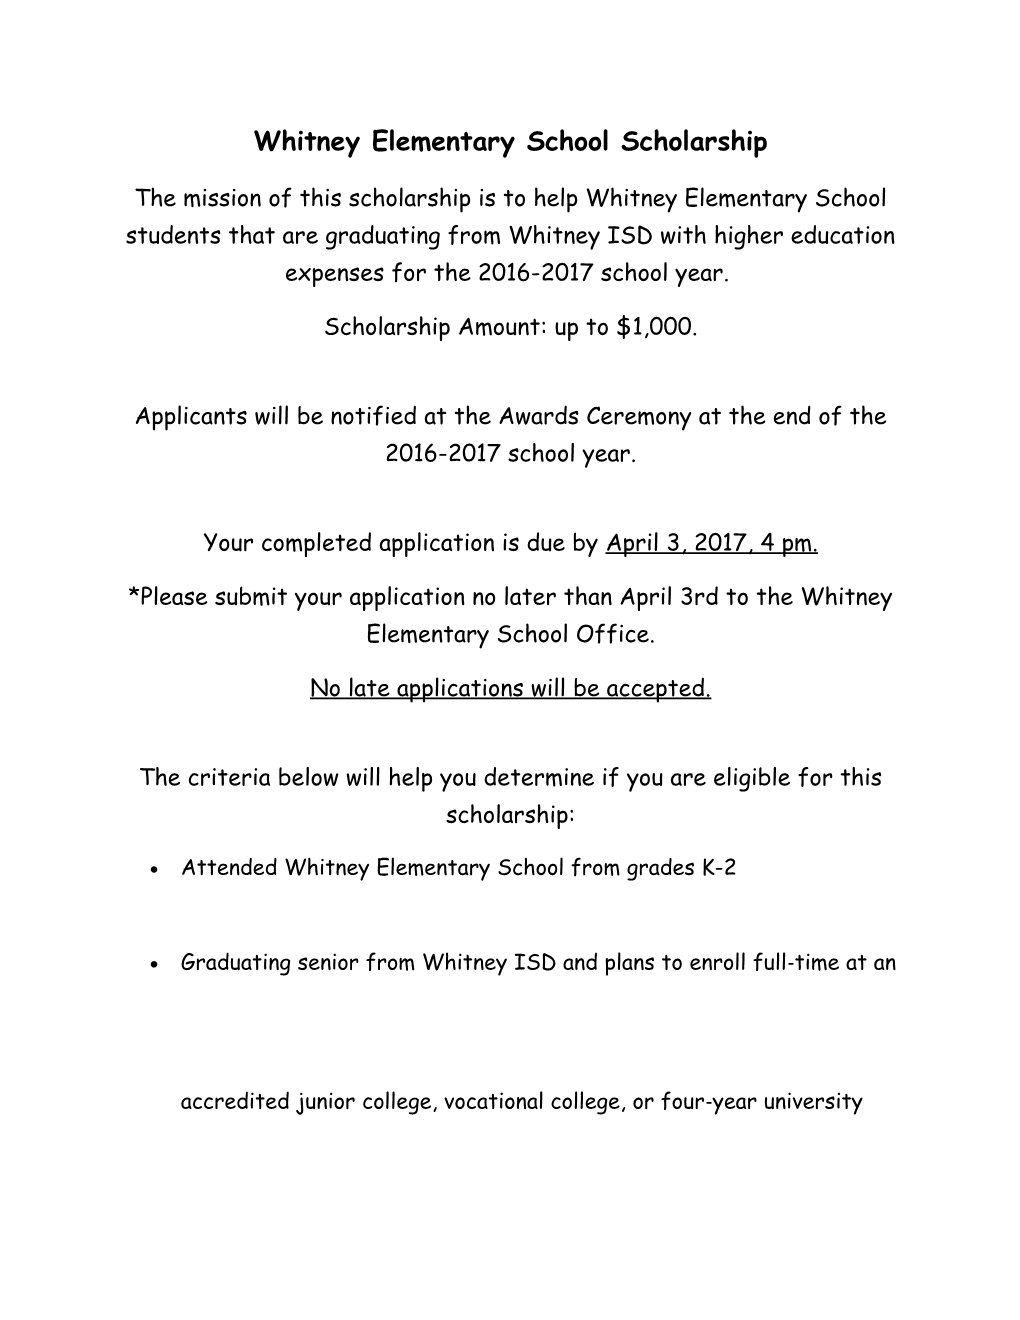 Whitney Elementary School Scholarship